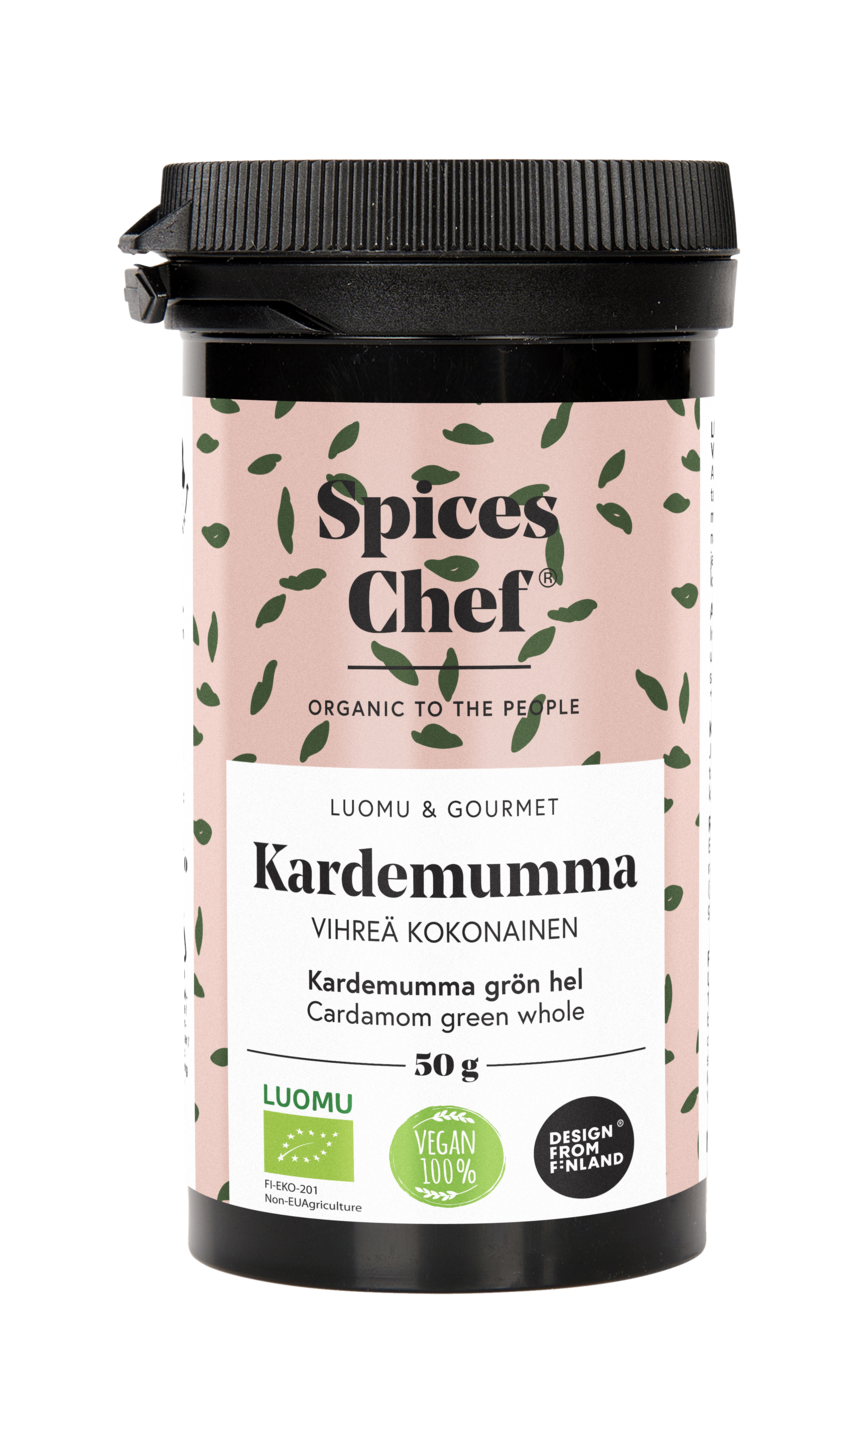 Spices Chef luomu kardemumma vihreä kokonainen 50g, BPA-vapaassa biomuovi maustepurkkissa.